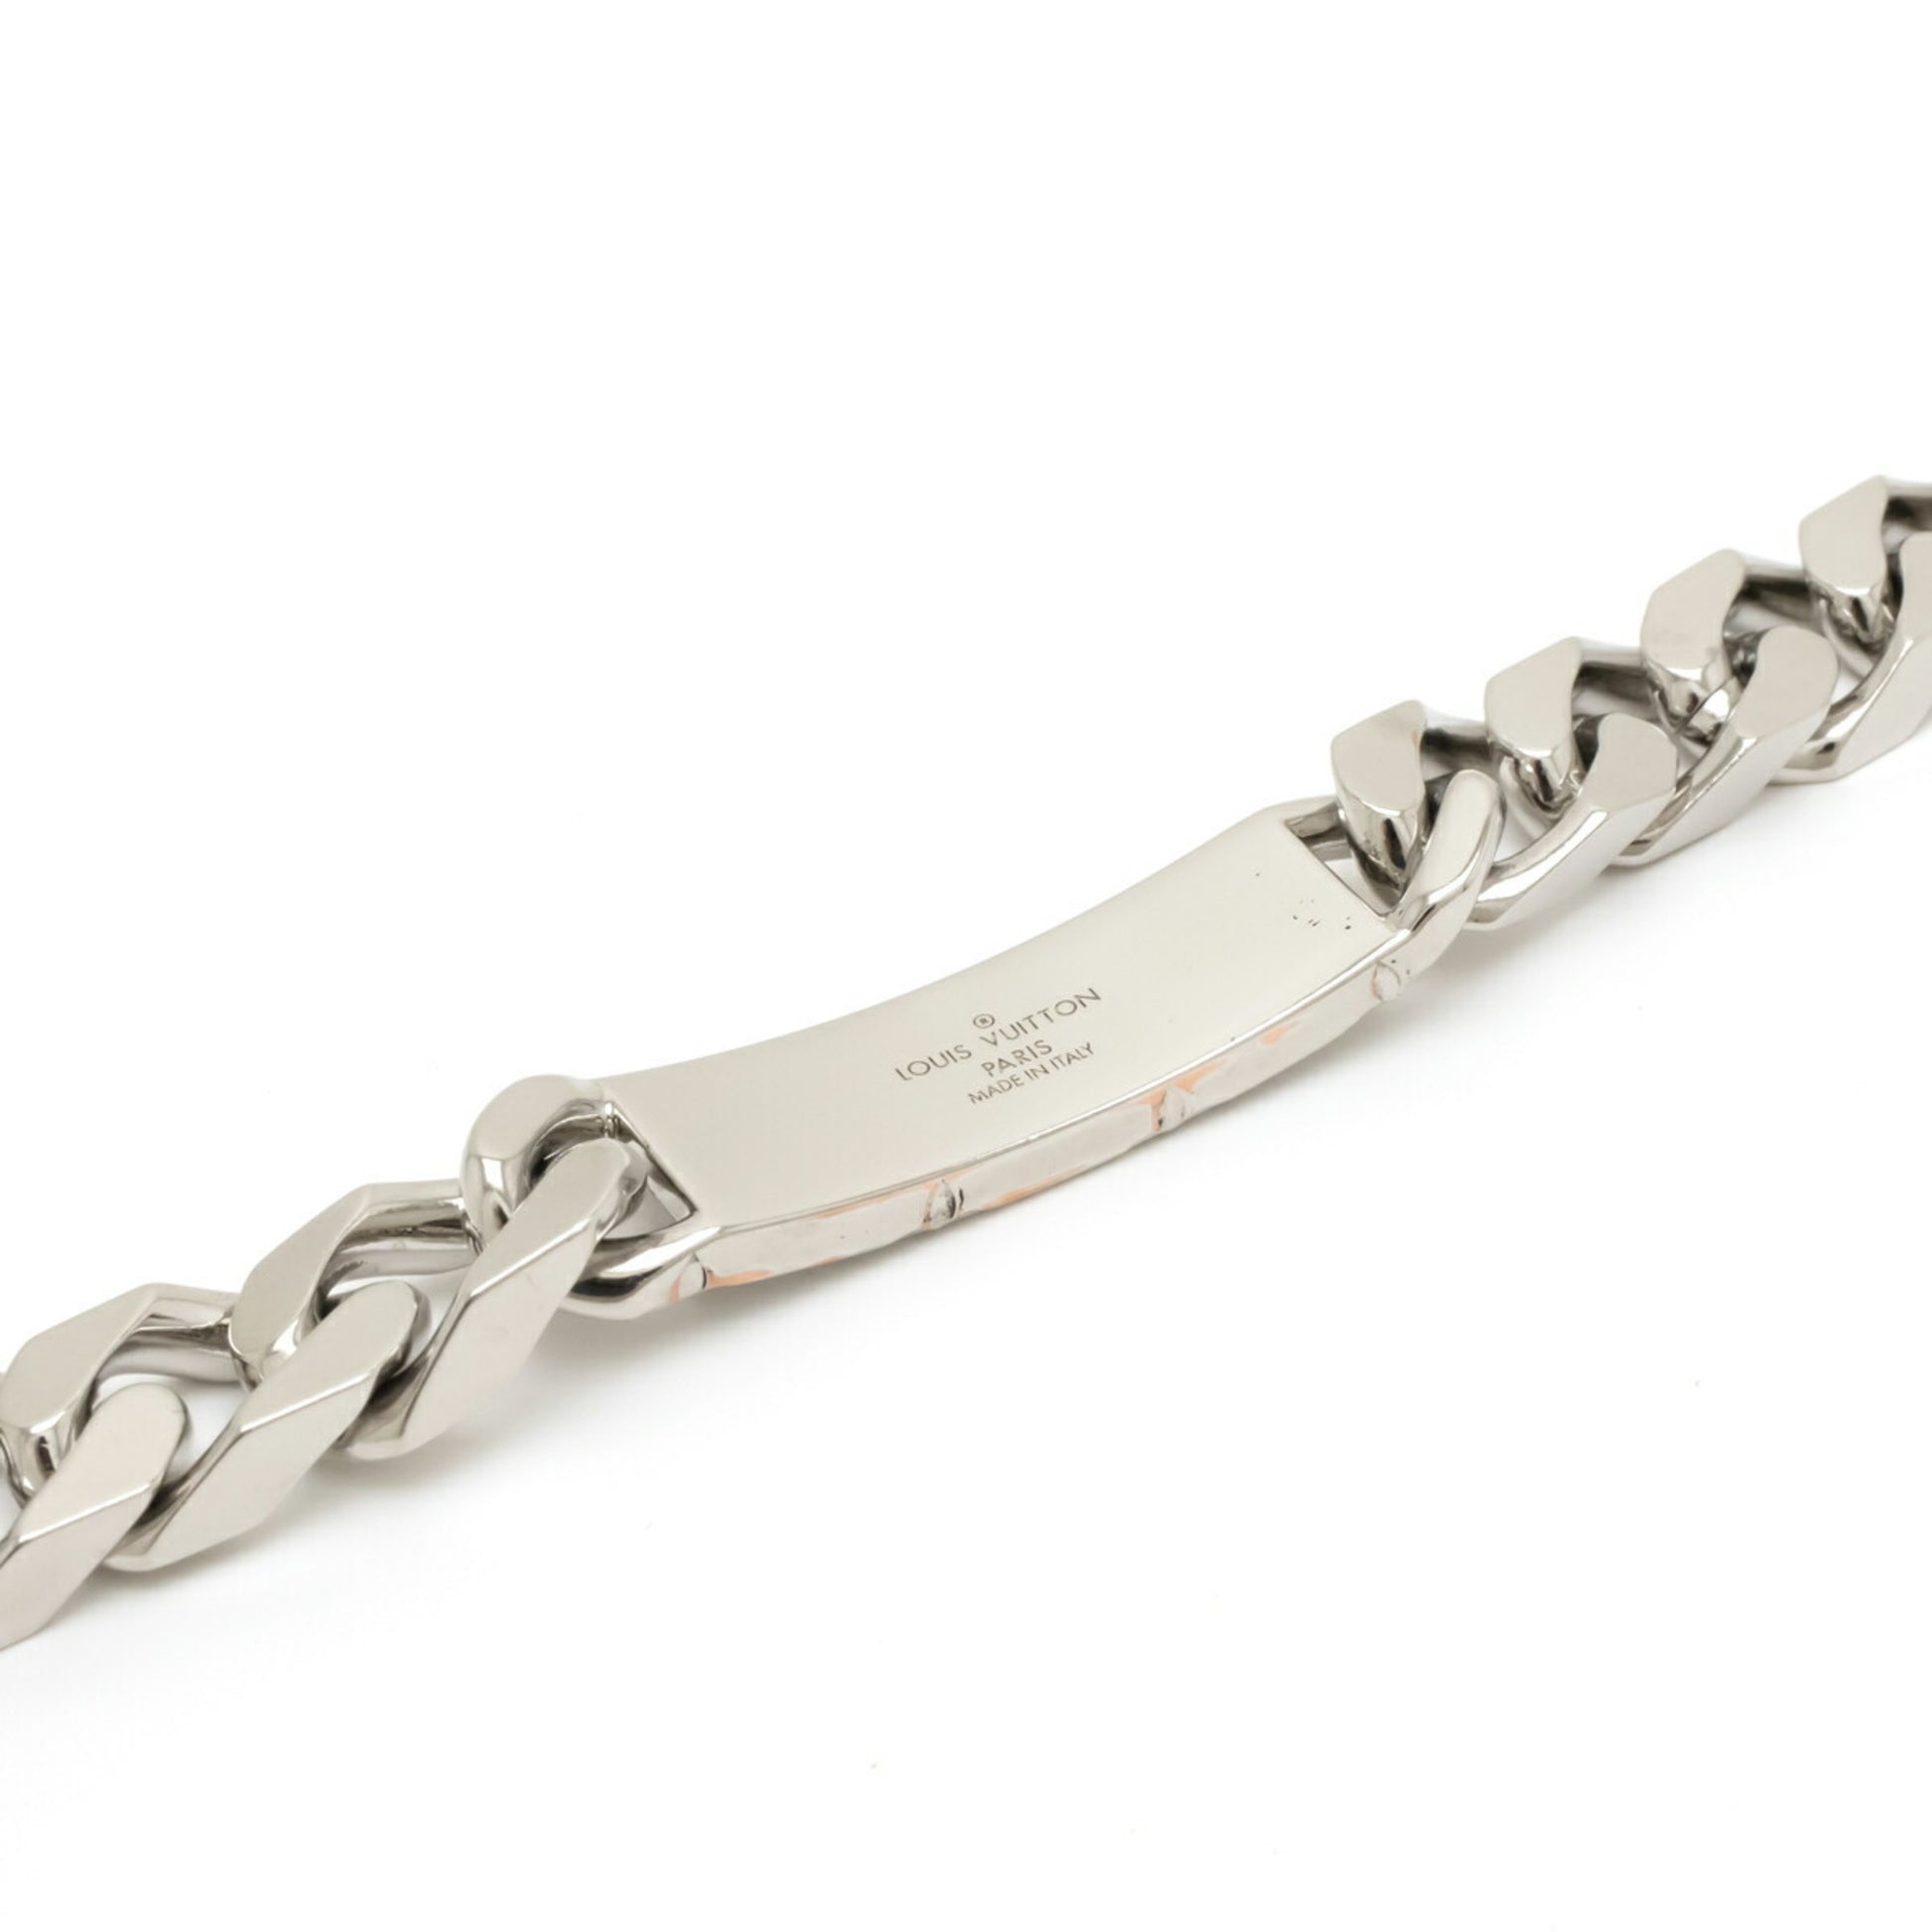 Louis Vuitton LOUIS VUITTON Bracelet Monogram Chain Metal Silver Unisex  M62486